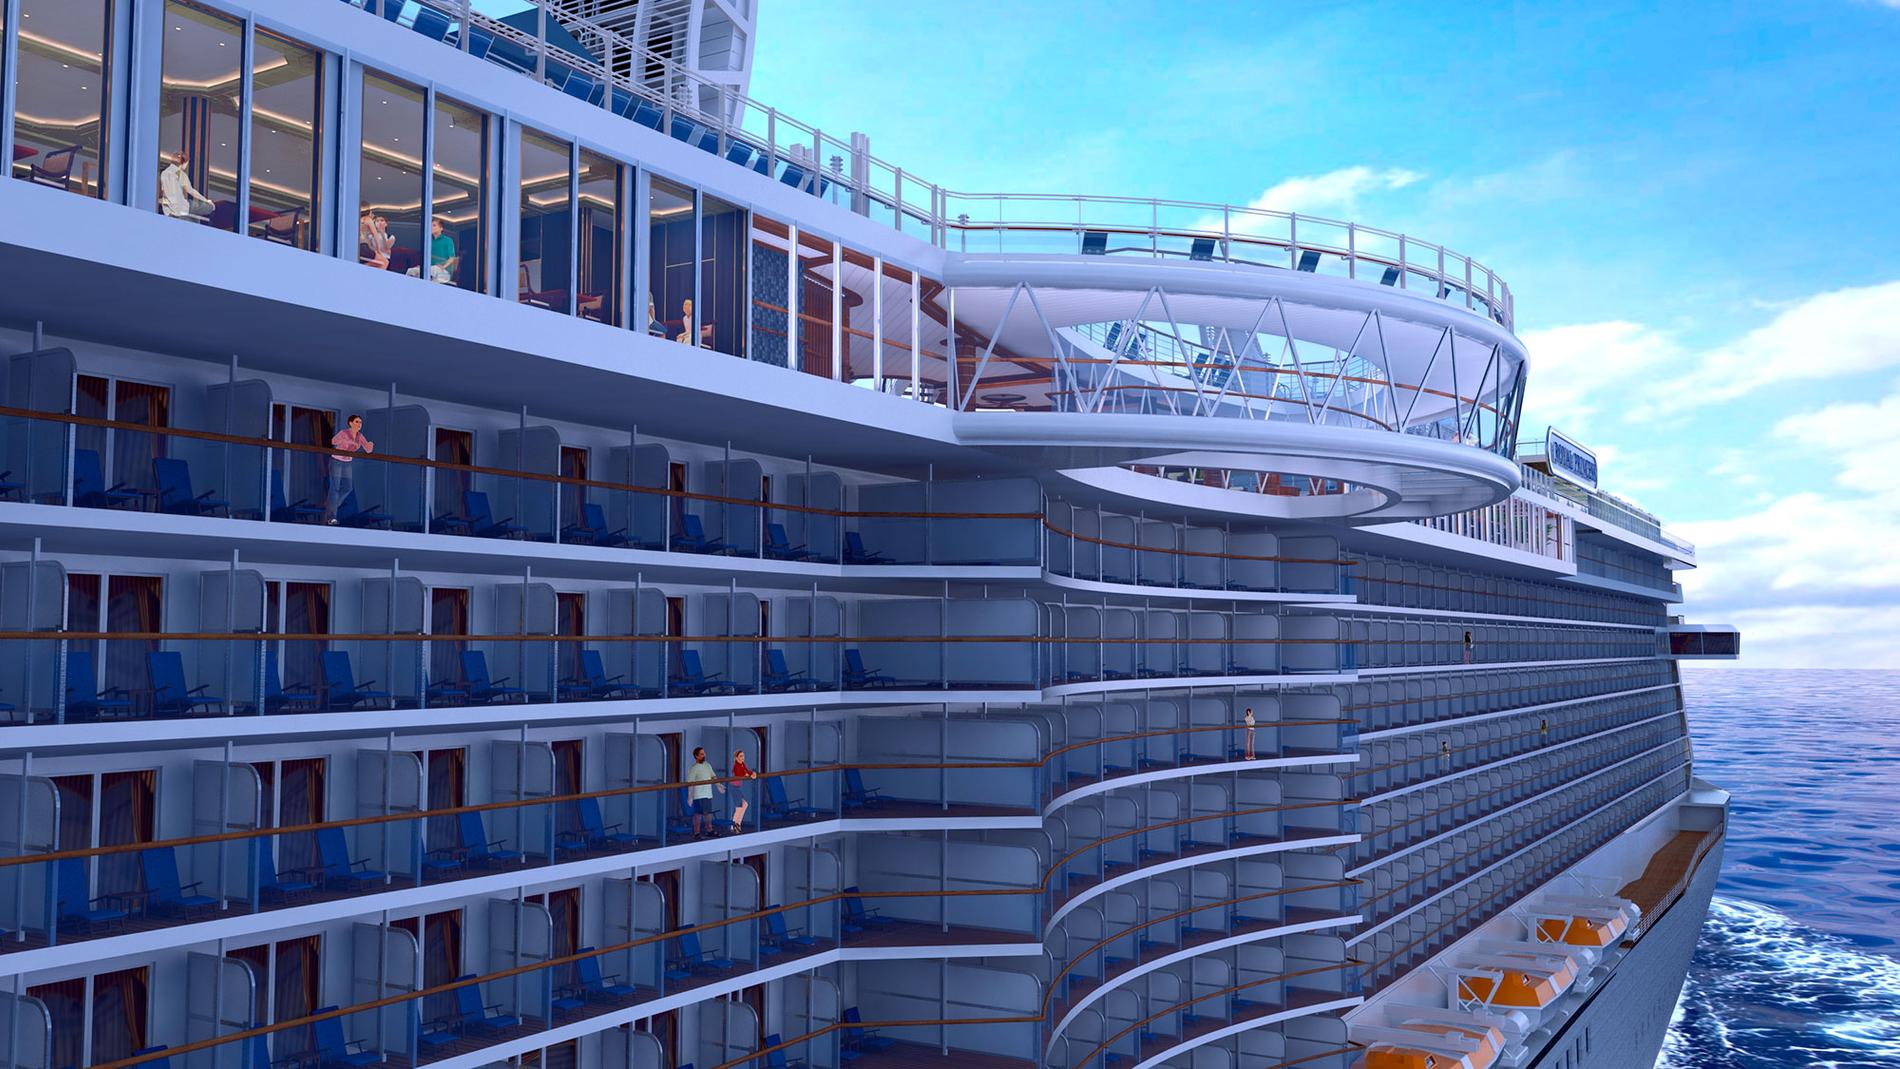 ROYAL PRINCESS Princess Cruises nya fartyg har premiär i juni 2013. Notera den svängda glasgången som hänger ut från fartygets sida.